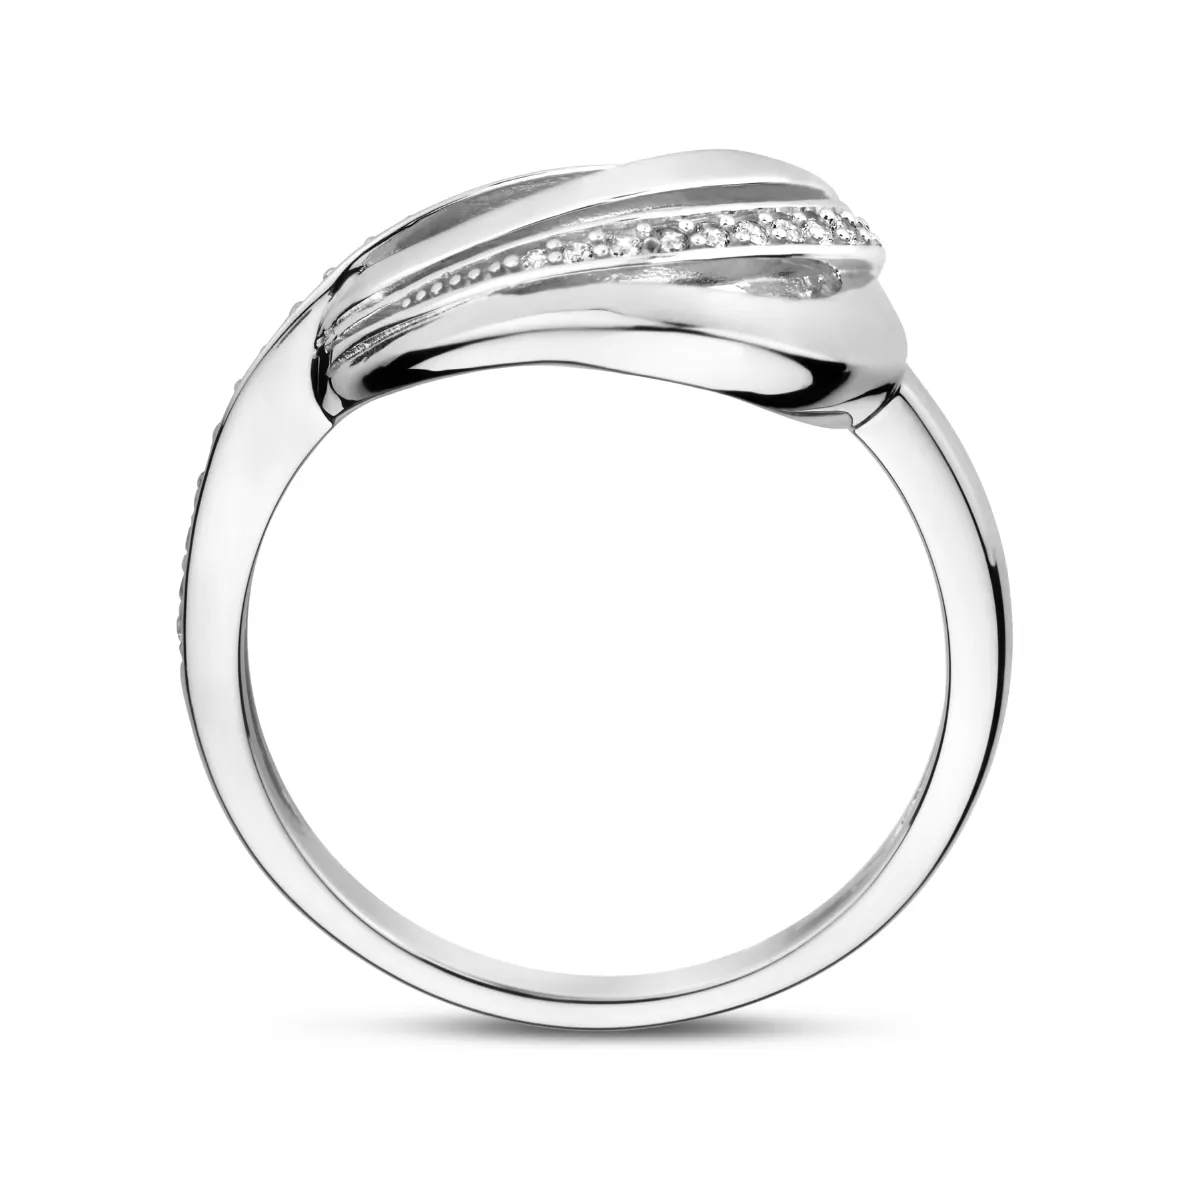 Ring Fantasie zilver-zirconia wit 11,5 mm 